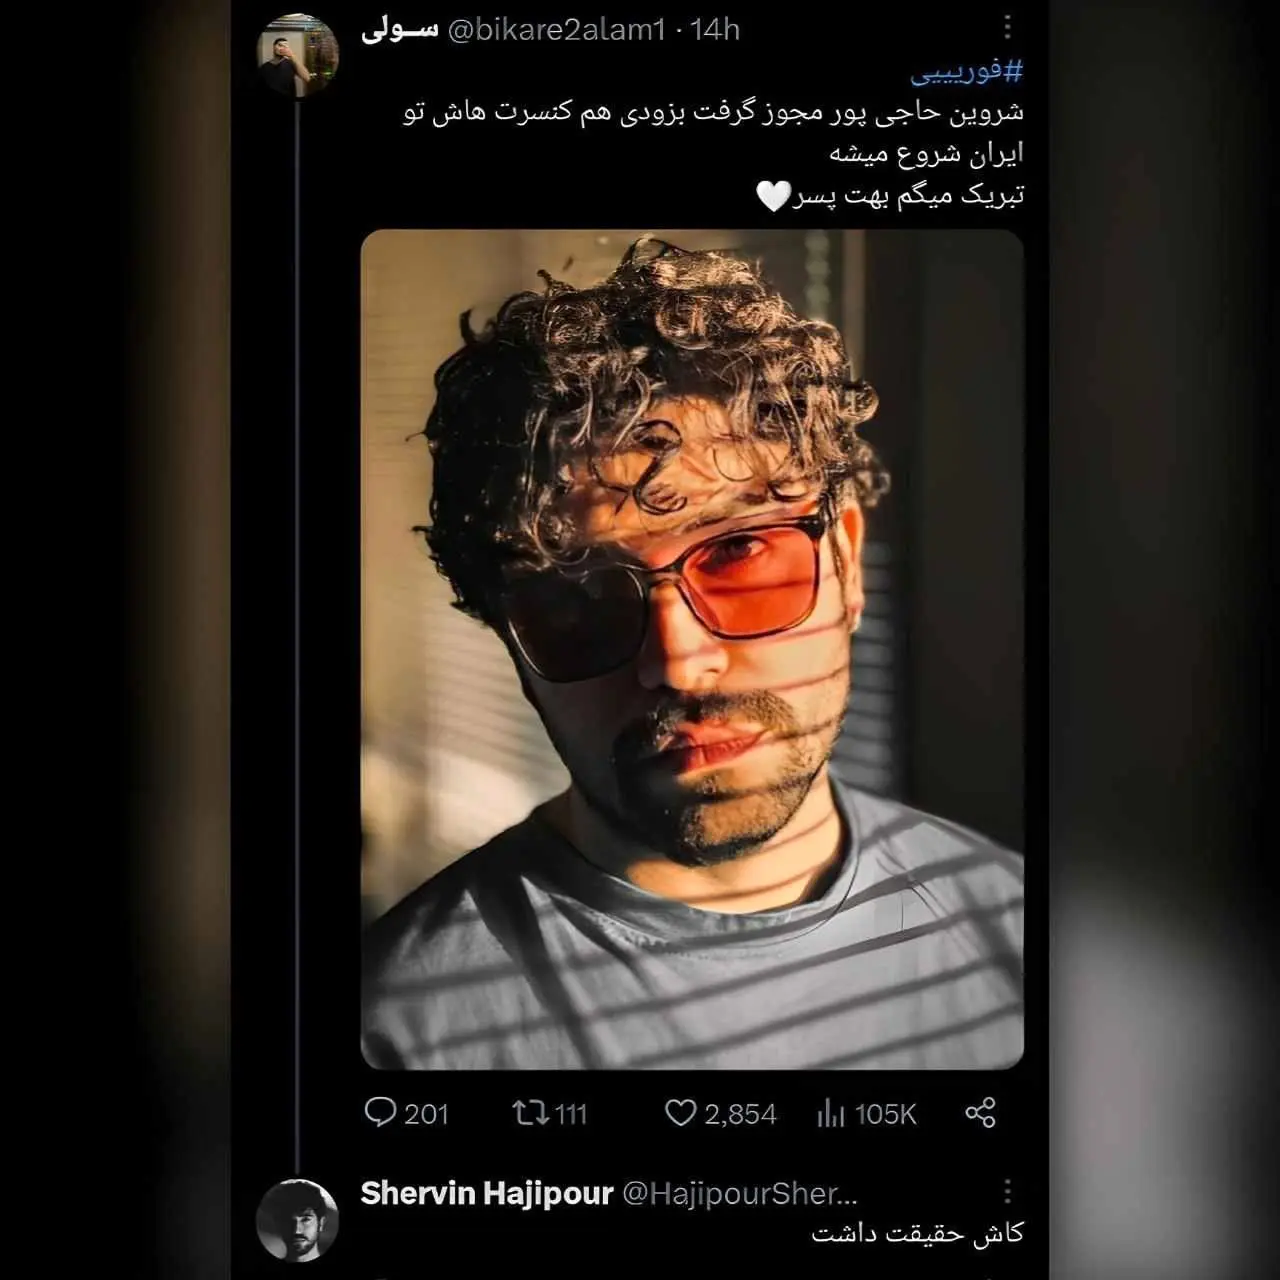 شروین حاجی پور یکی از خوانندگان معروفی که یکسال است خبرساز شده در توئیتر شایعات دریافت مجوز ارشاد و کنسرت را تکذیب کرد.